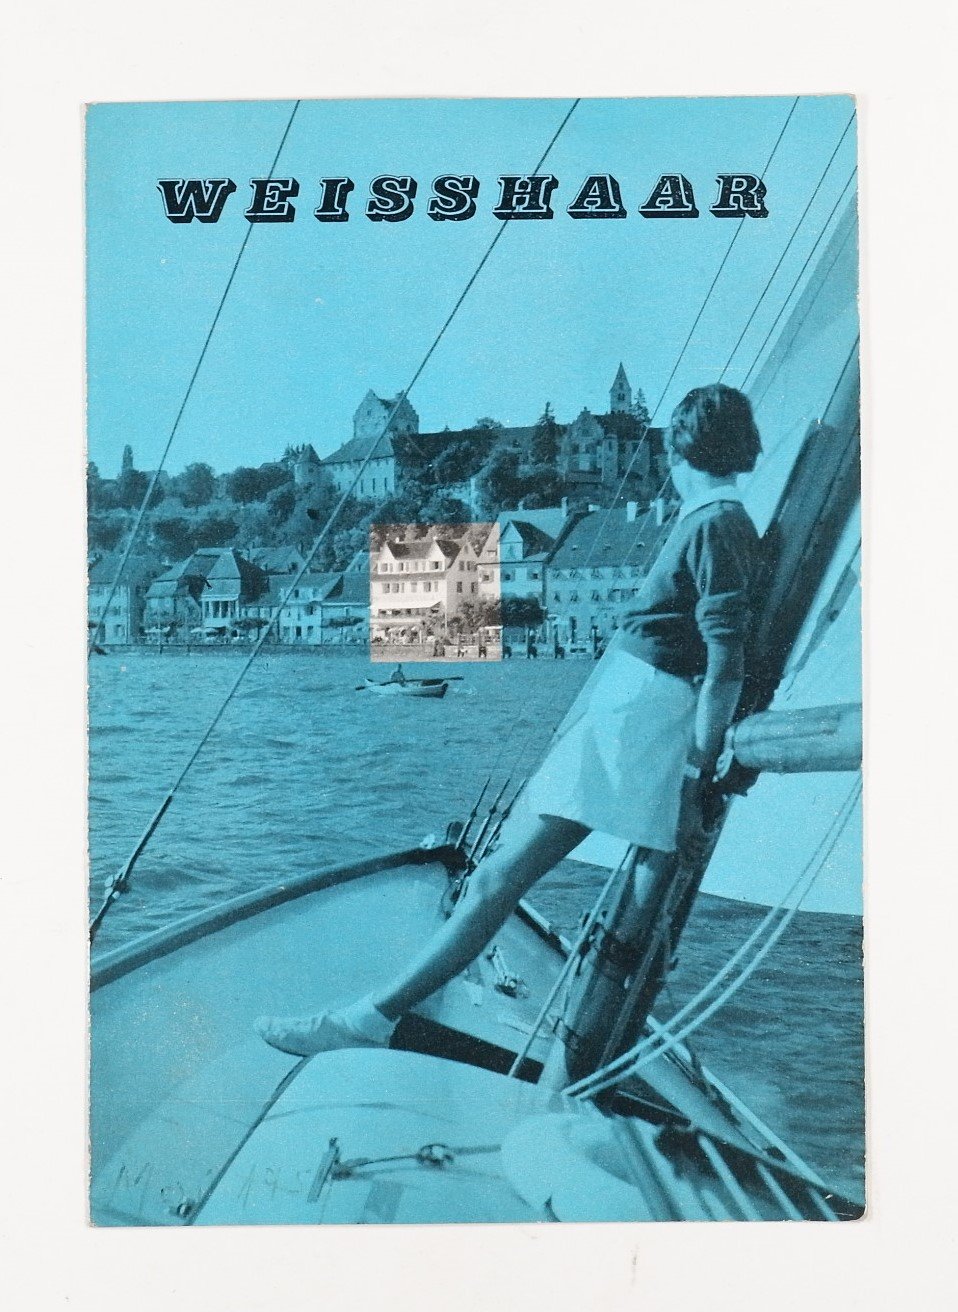 Werbebroschüre: Hotel-Strandcafe Weisshaar (Volkskunde- und Freilichtmuseum Roscheider Hof RR-F)